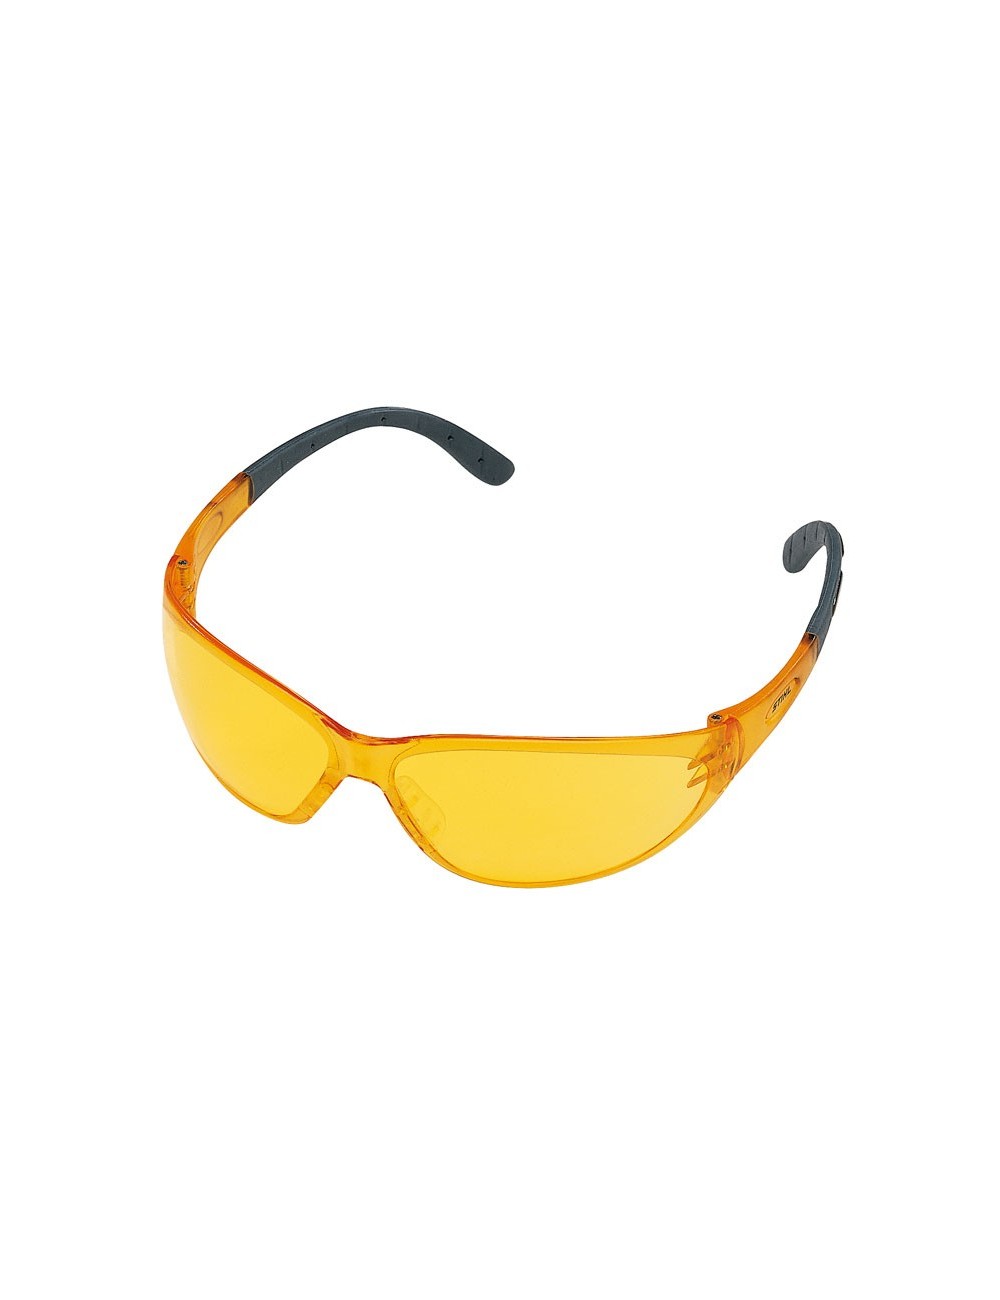 Gafas protectoras CONTRAST, amarillas